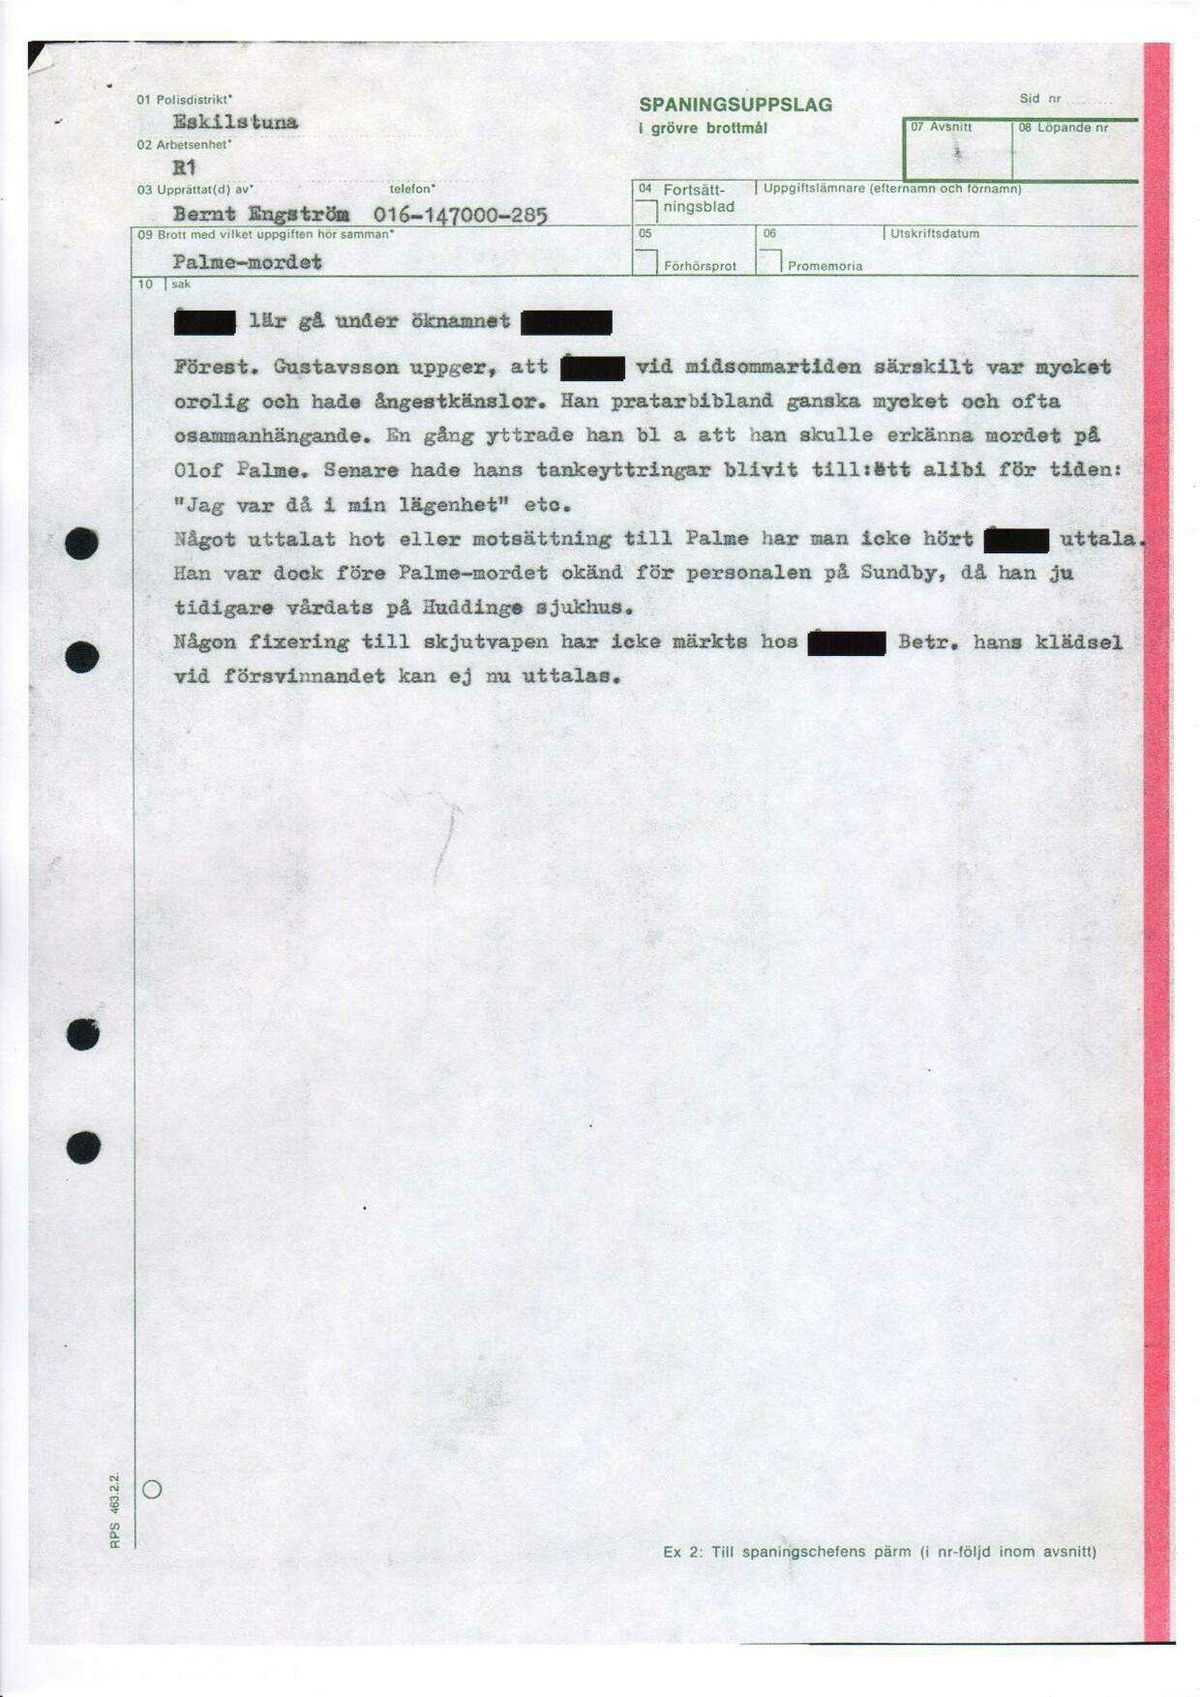 Pol-1986-09-18 1000 D5801-00 Erkännanden Palmemordet.pdf